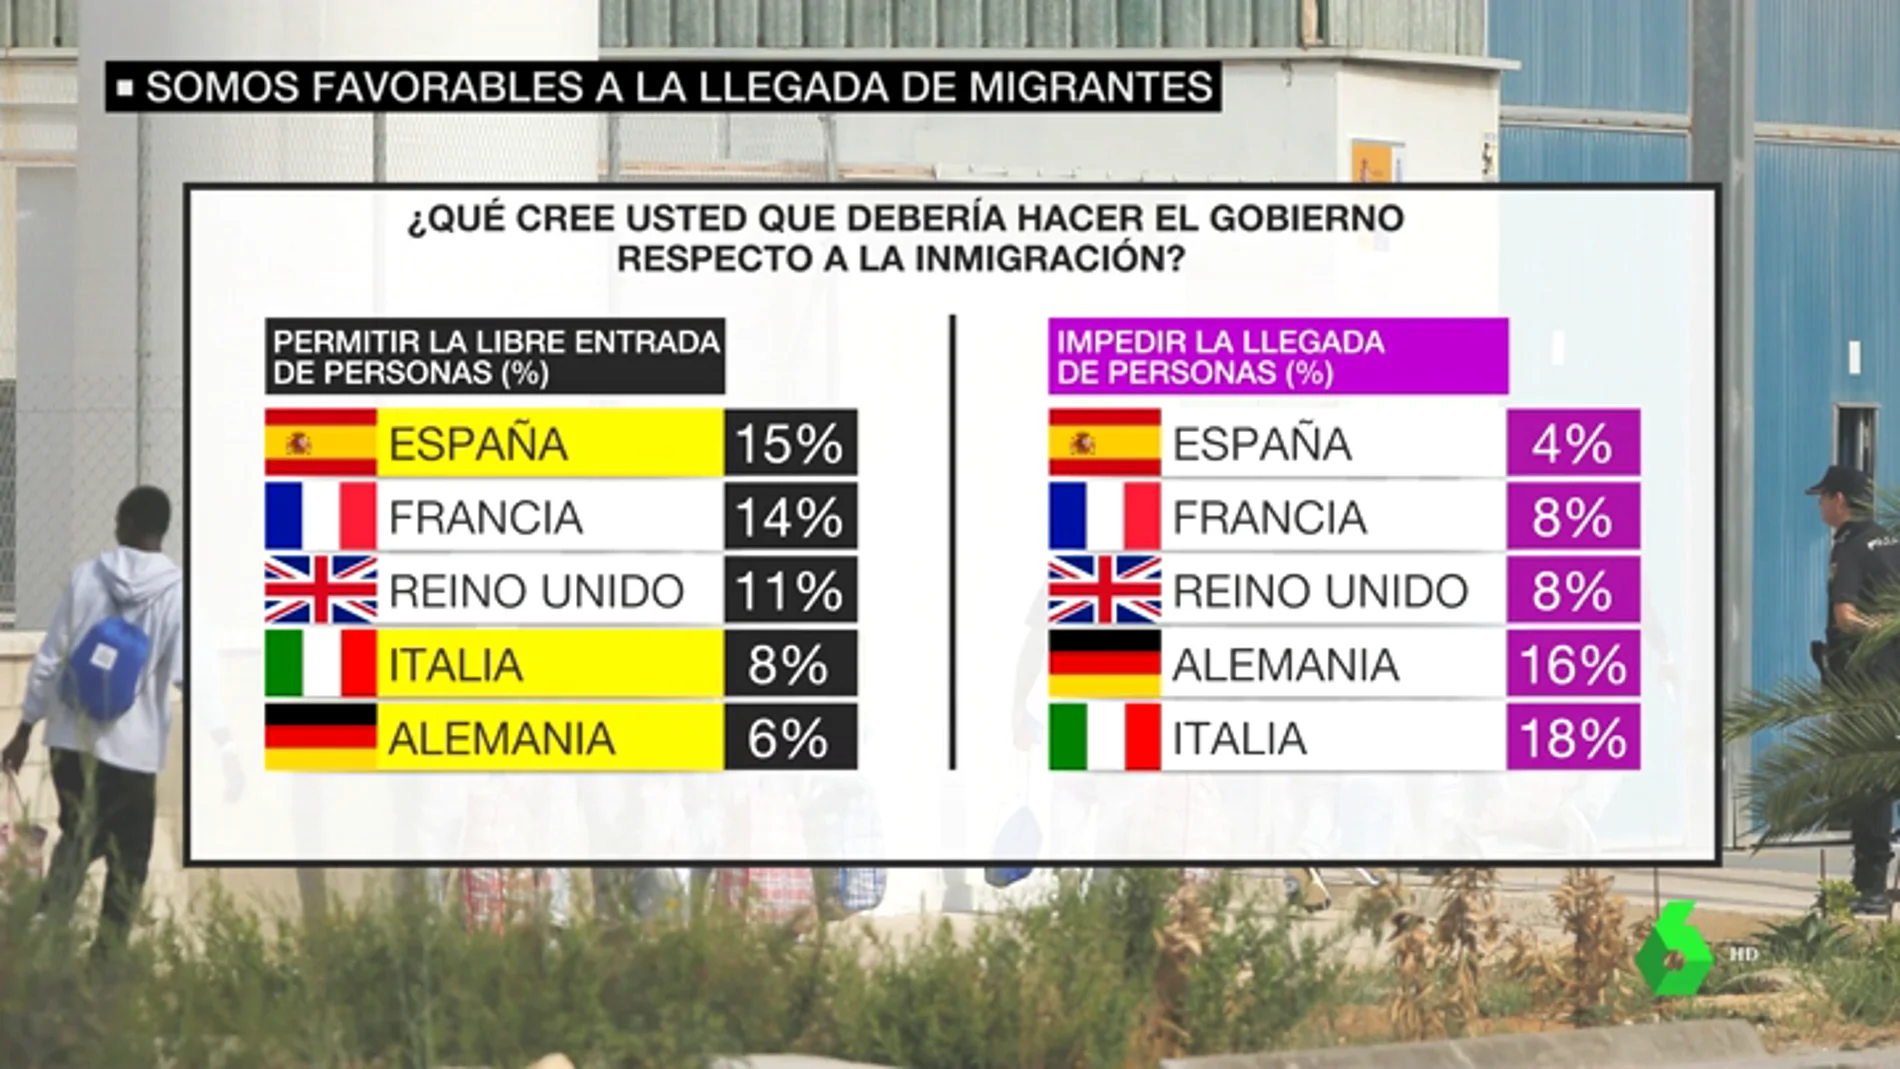 Los españoles, los europeos más favorables a la llegada de inmigrantes